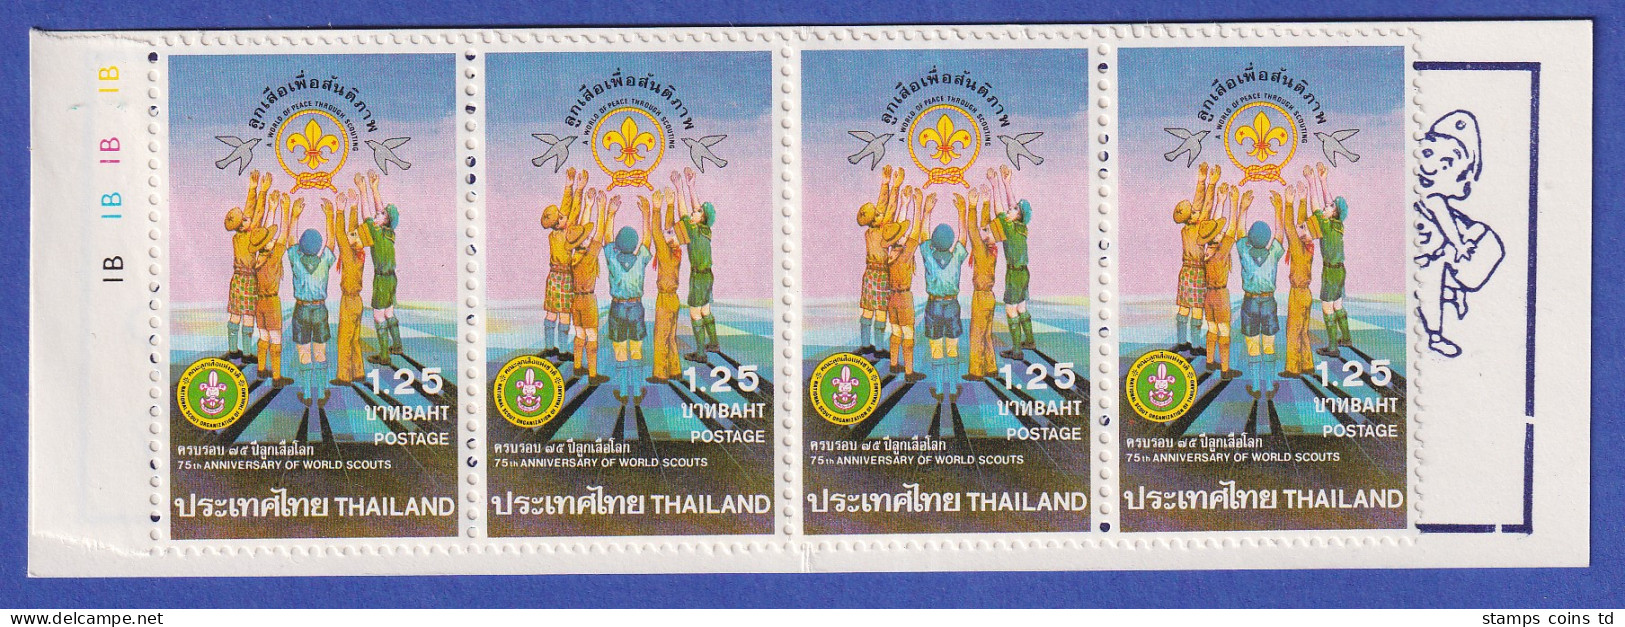 Thailand 1982 Pfadfinder Mi.-Nr. 996 Markenheftchen Postfrisch ** / MNH - Thaïlande